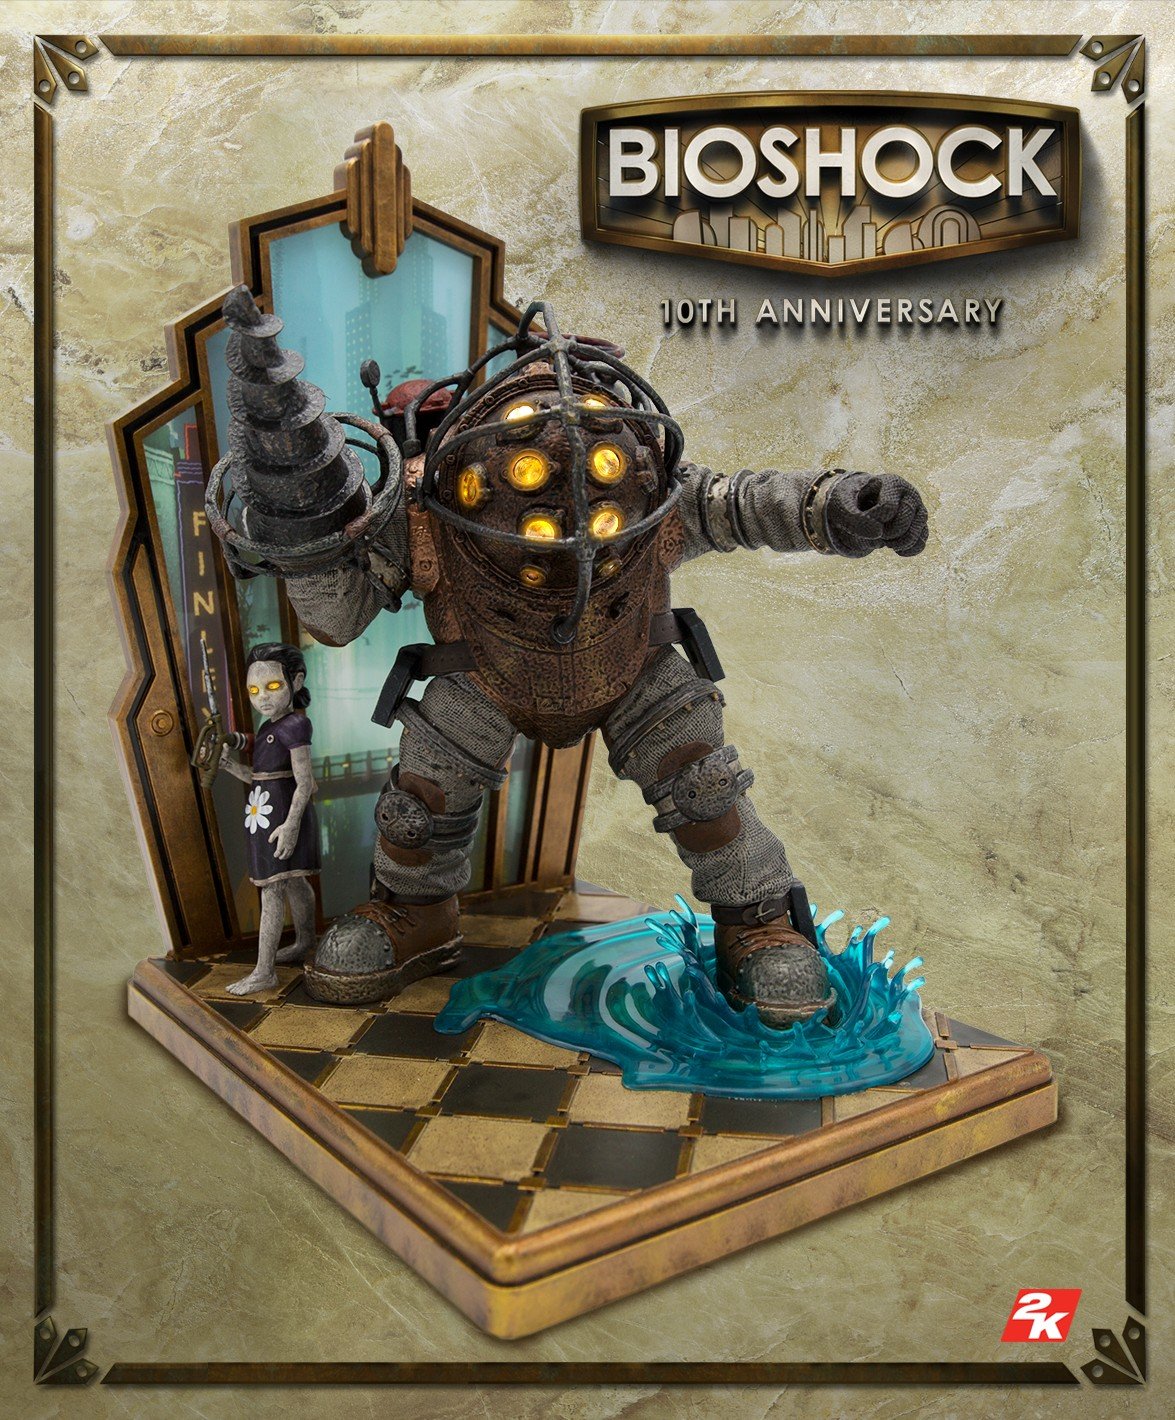 تماشا کنید: معرفی یک نسخه کالکتور ویژه برای عنوان BioShock به‌مناسبت سالگرد 10 سالگی این بازی